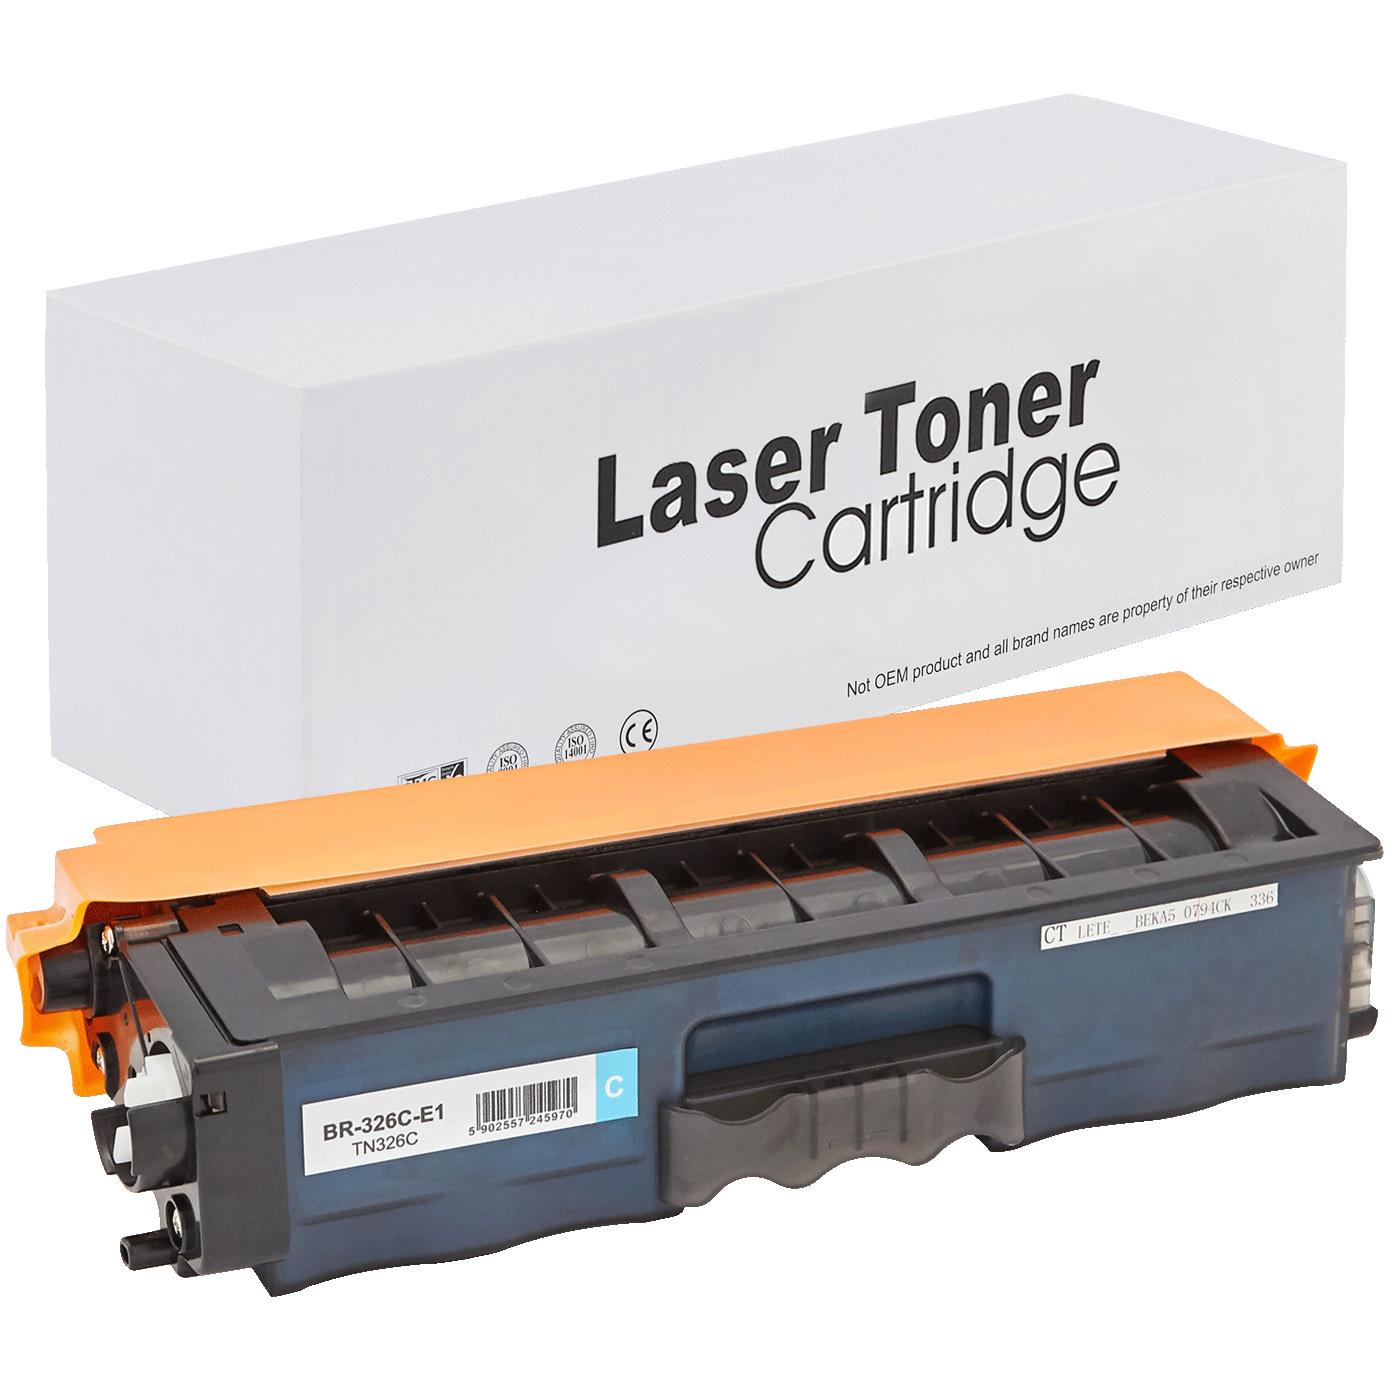 съвместима тонер касета за принтери и печатащи устройства на Brother DCP-L 8400 CDN Toner BR-326C | TN326C. Ниски цени, прецизно изпълнение, високо качество.